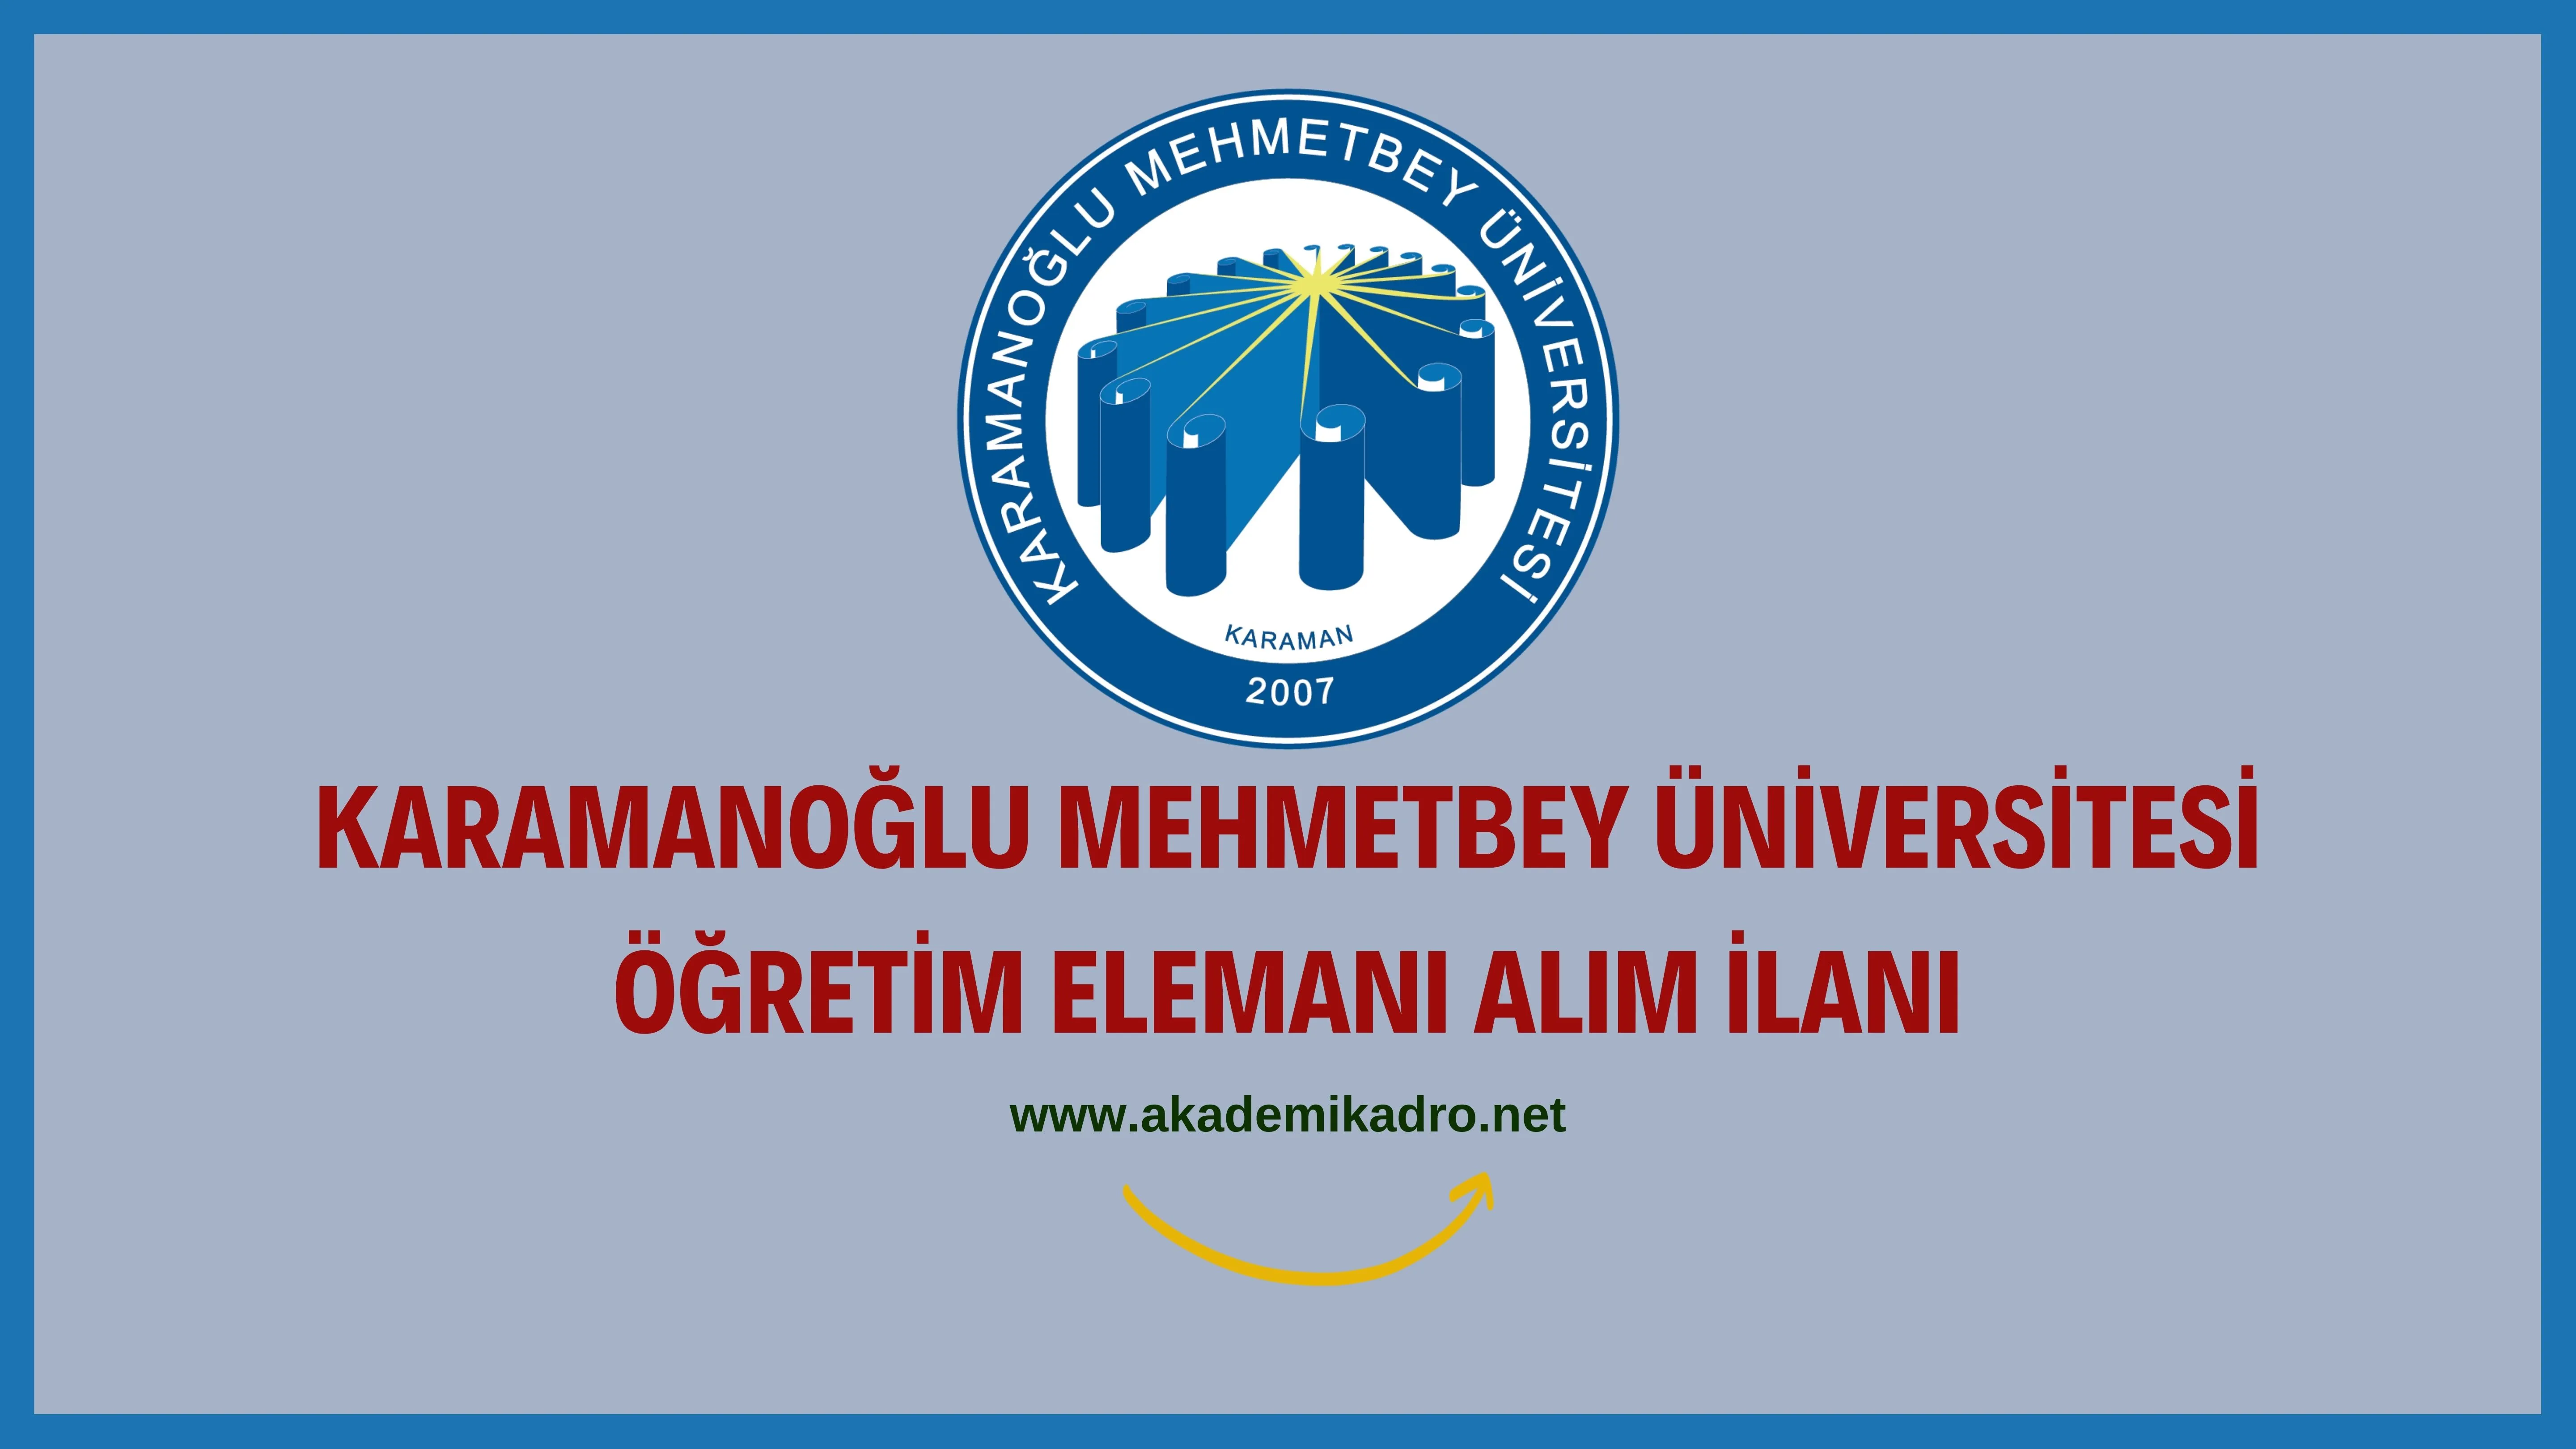 Karamanoğlu Mehmetbey Üniversitesi 2 Öğretim görevlisi alacaktır. Son başvuru tarihi 7 Ekim 2022